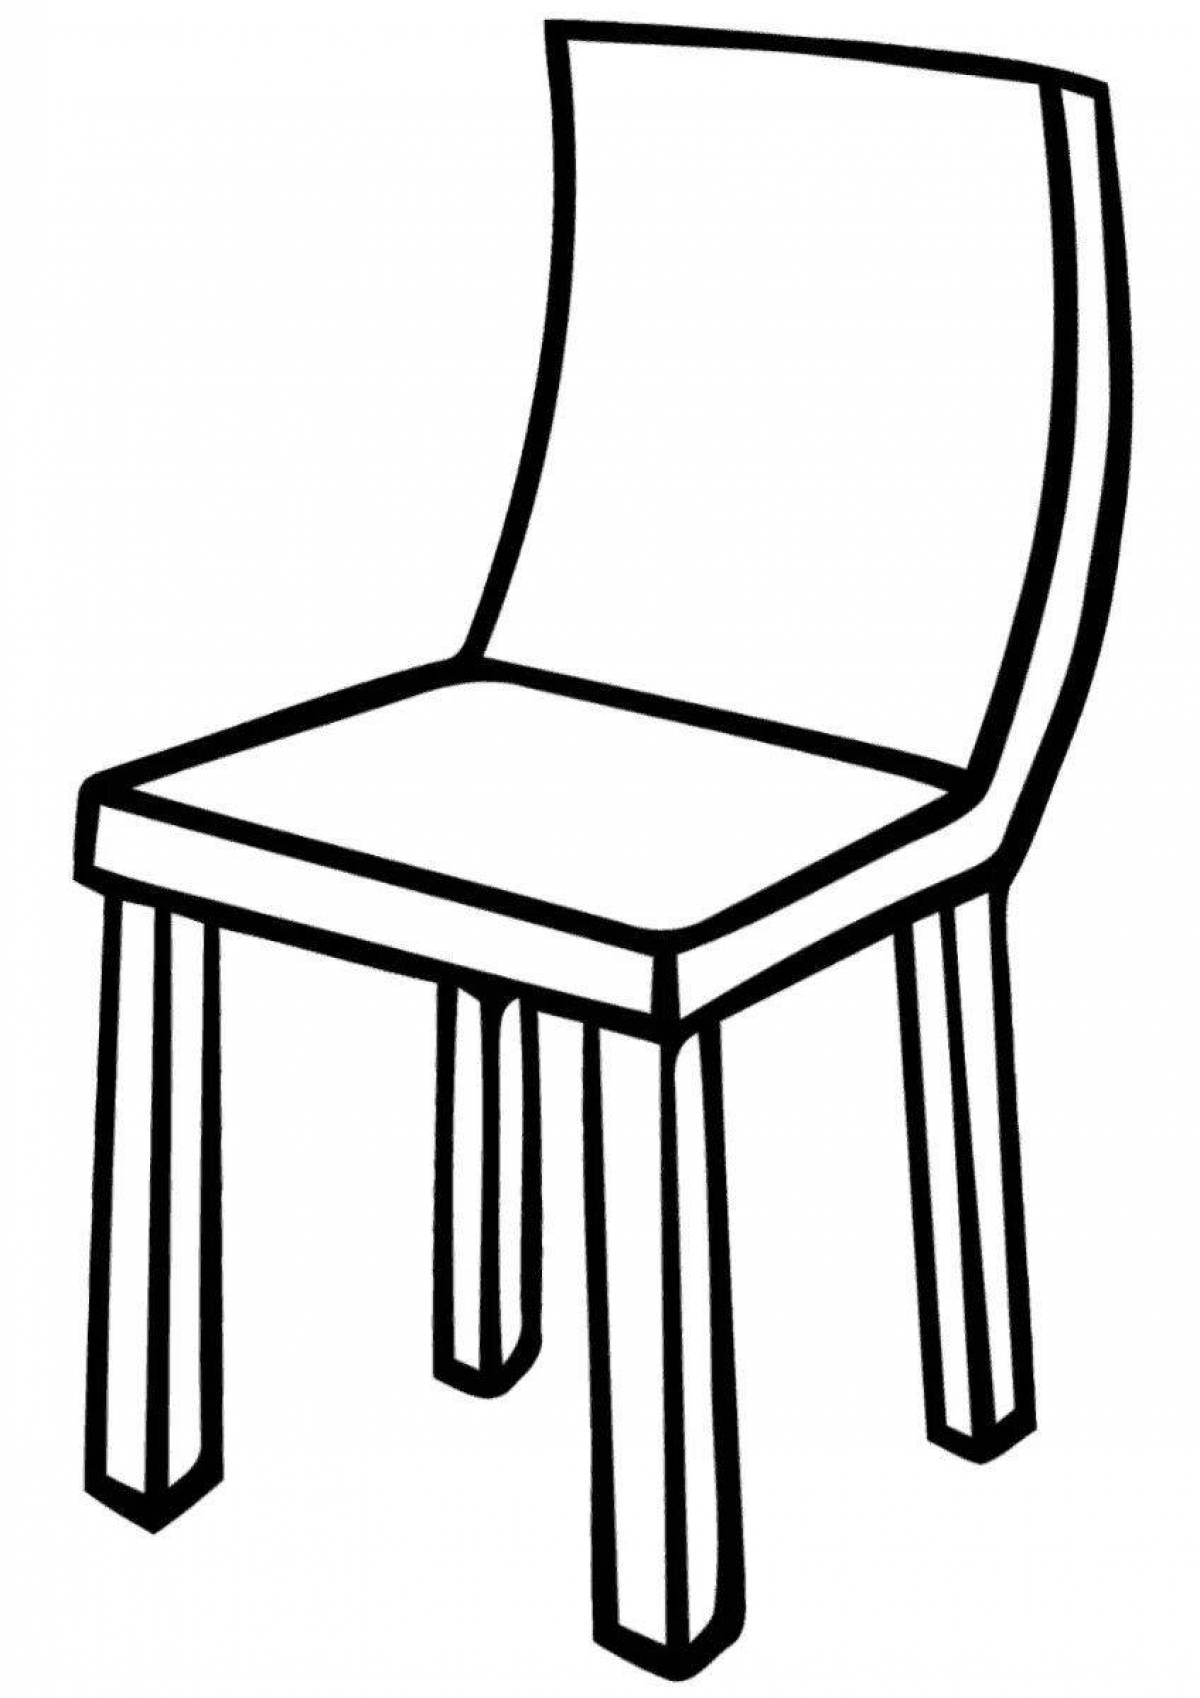 Раскраска драматический стол и стул